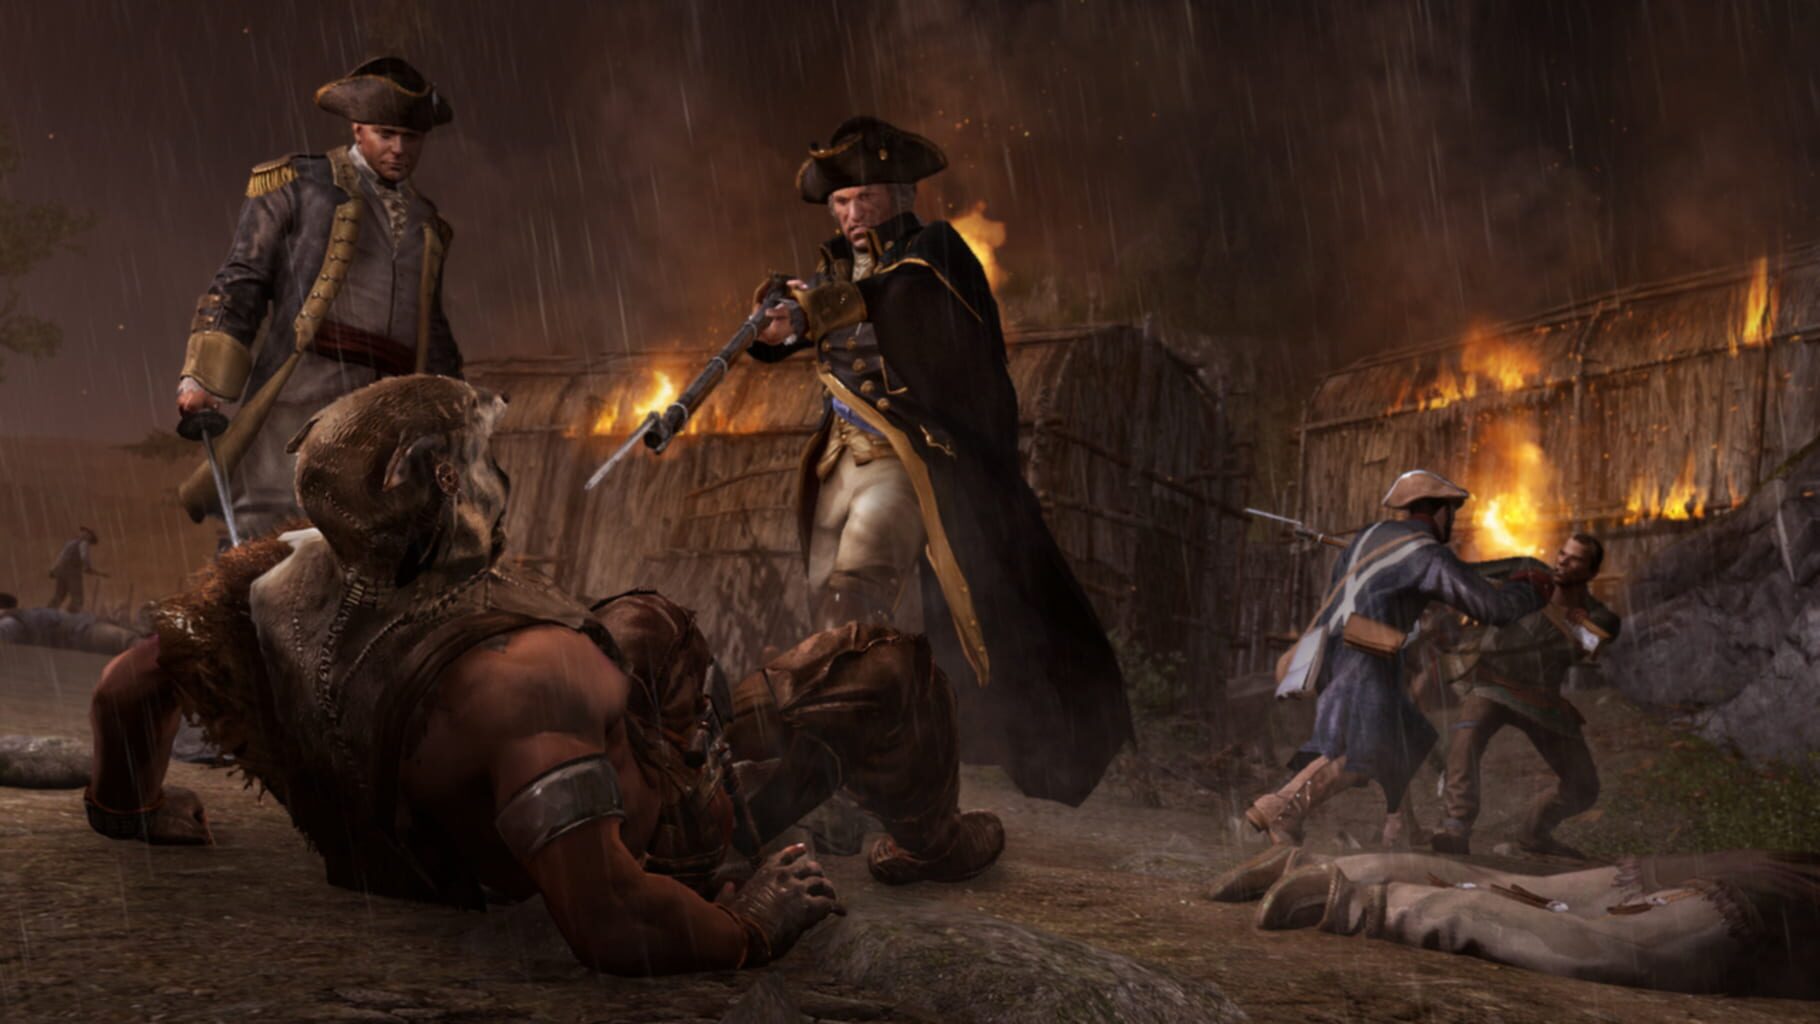 Captura de pantalla - Assassin's Creed III: Tyranny of King Washington - The Infamy